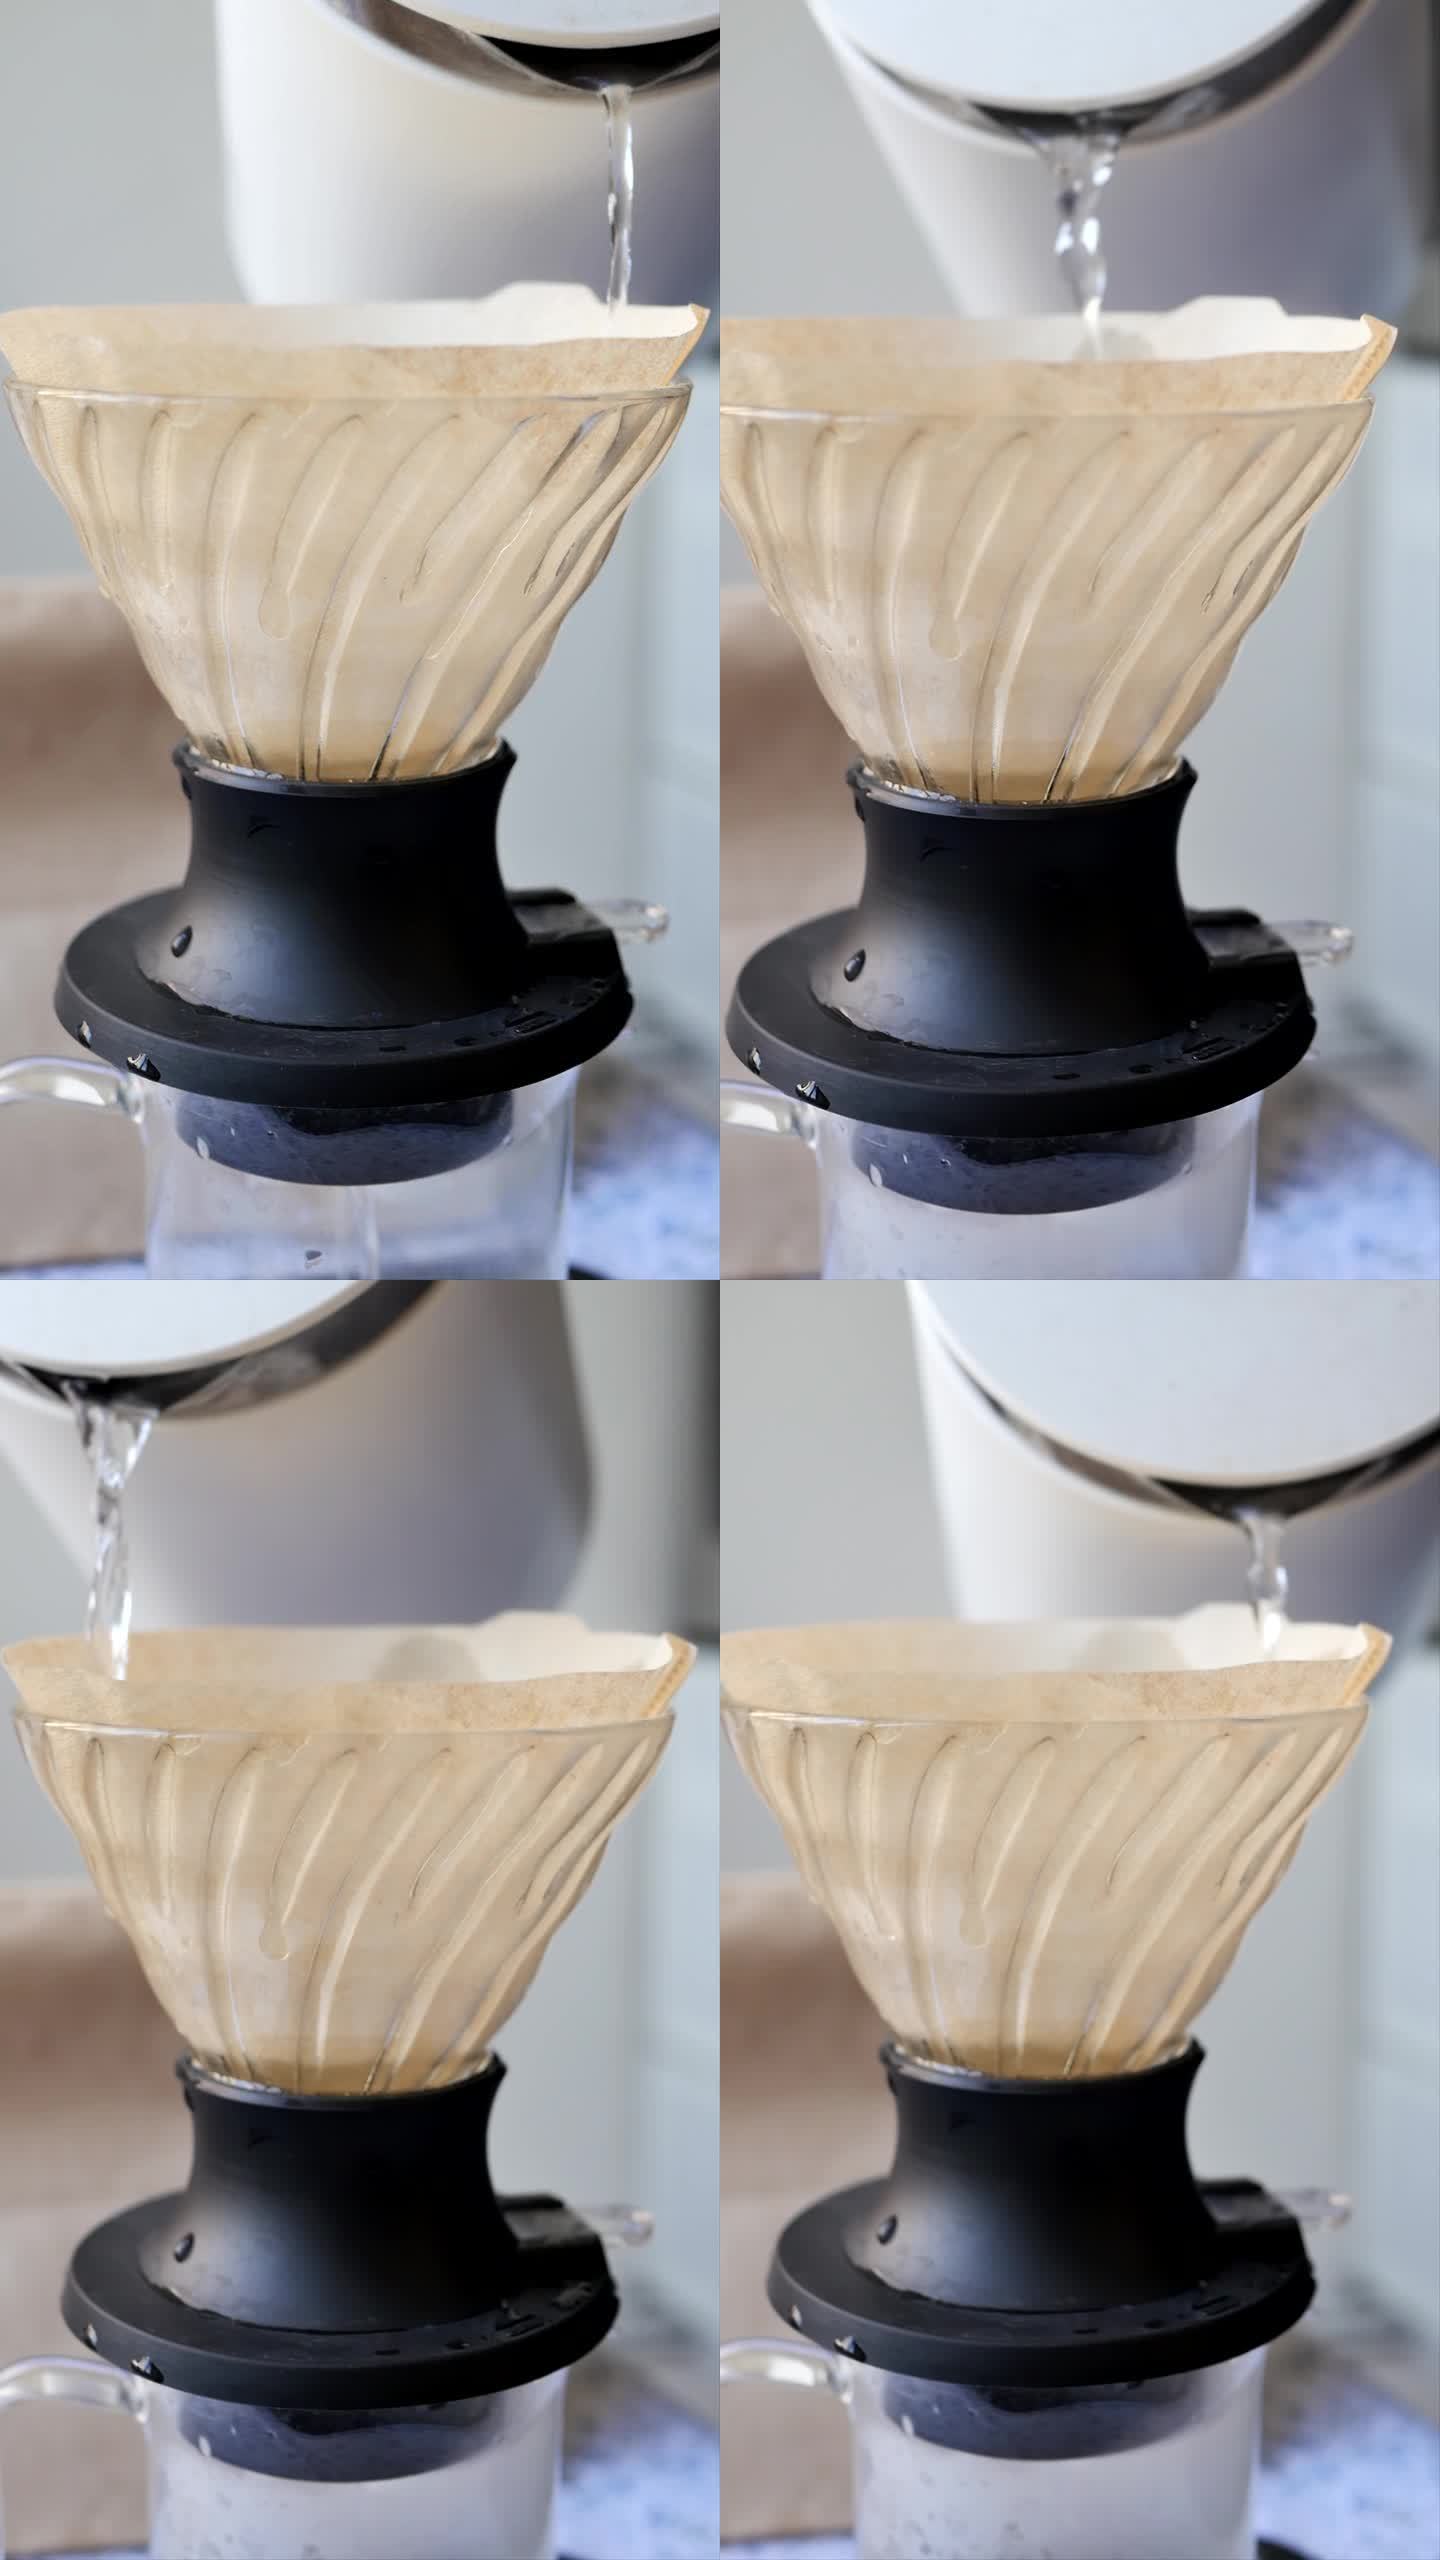 在用滴灌法制备饮料时，将热水倒入杯式滤纸上，使滤纸湿润的过程。另一种冲泡咖啡的方法。竖屏方向